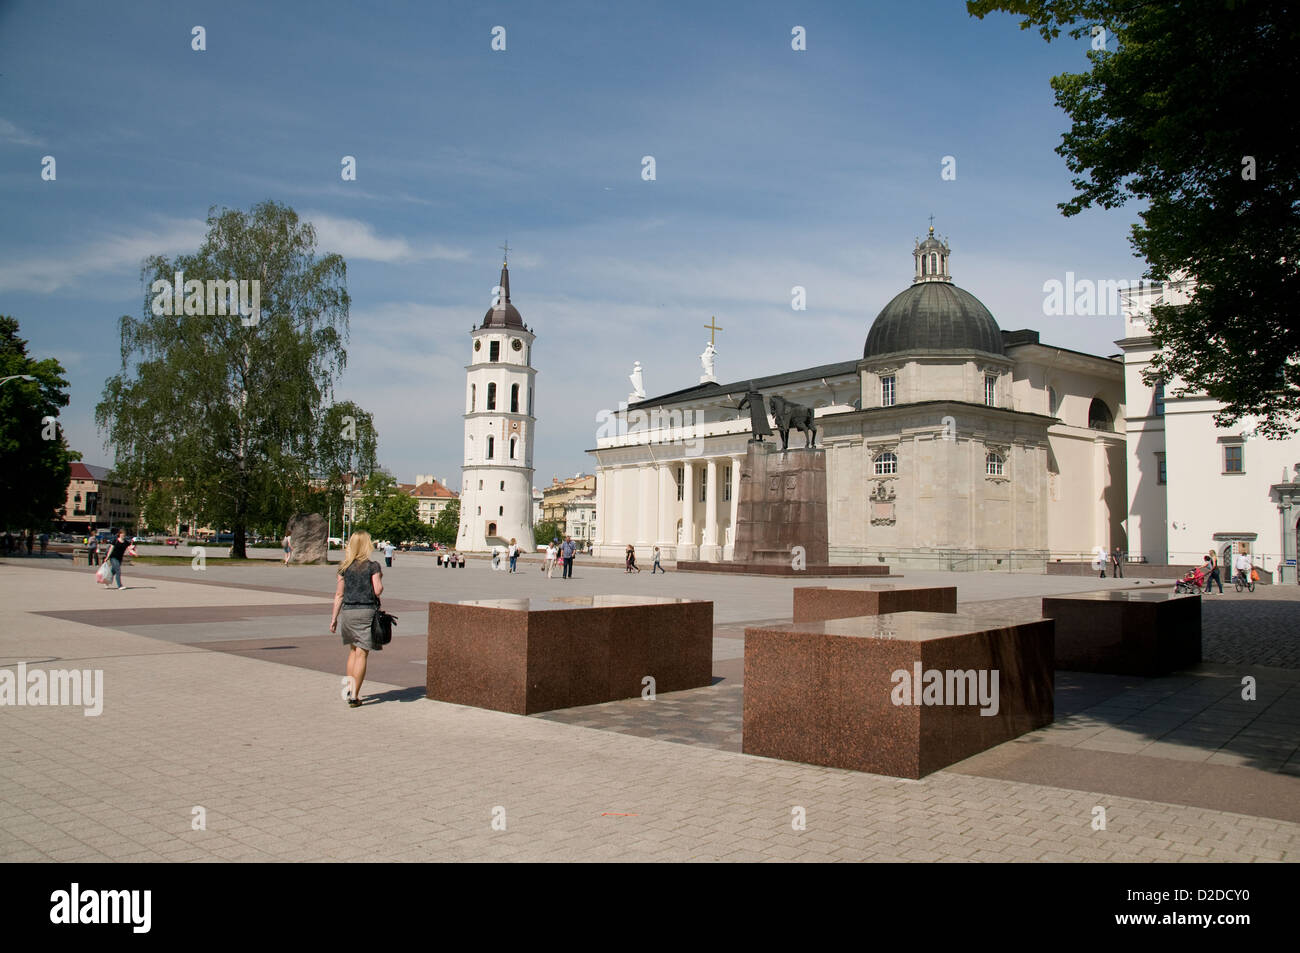 Le beffroi et une statue de Gediminas, Grand-duc de Lituanie, fondateur de Vilnius datant de 14th ans, sur la place de la cathédrale, Vilnius, Lituanie, la rue Baltique Banque D'Images